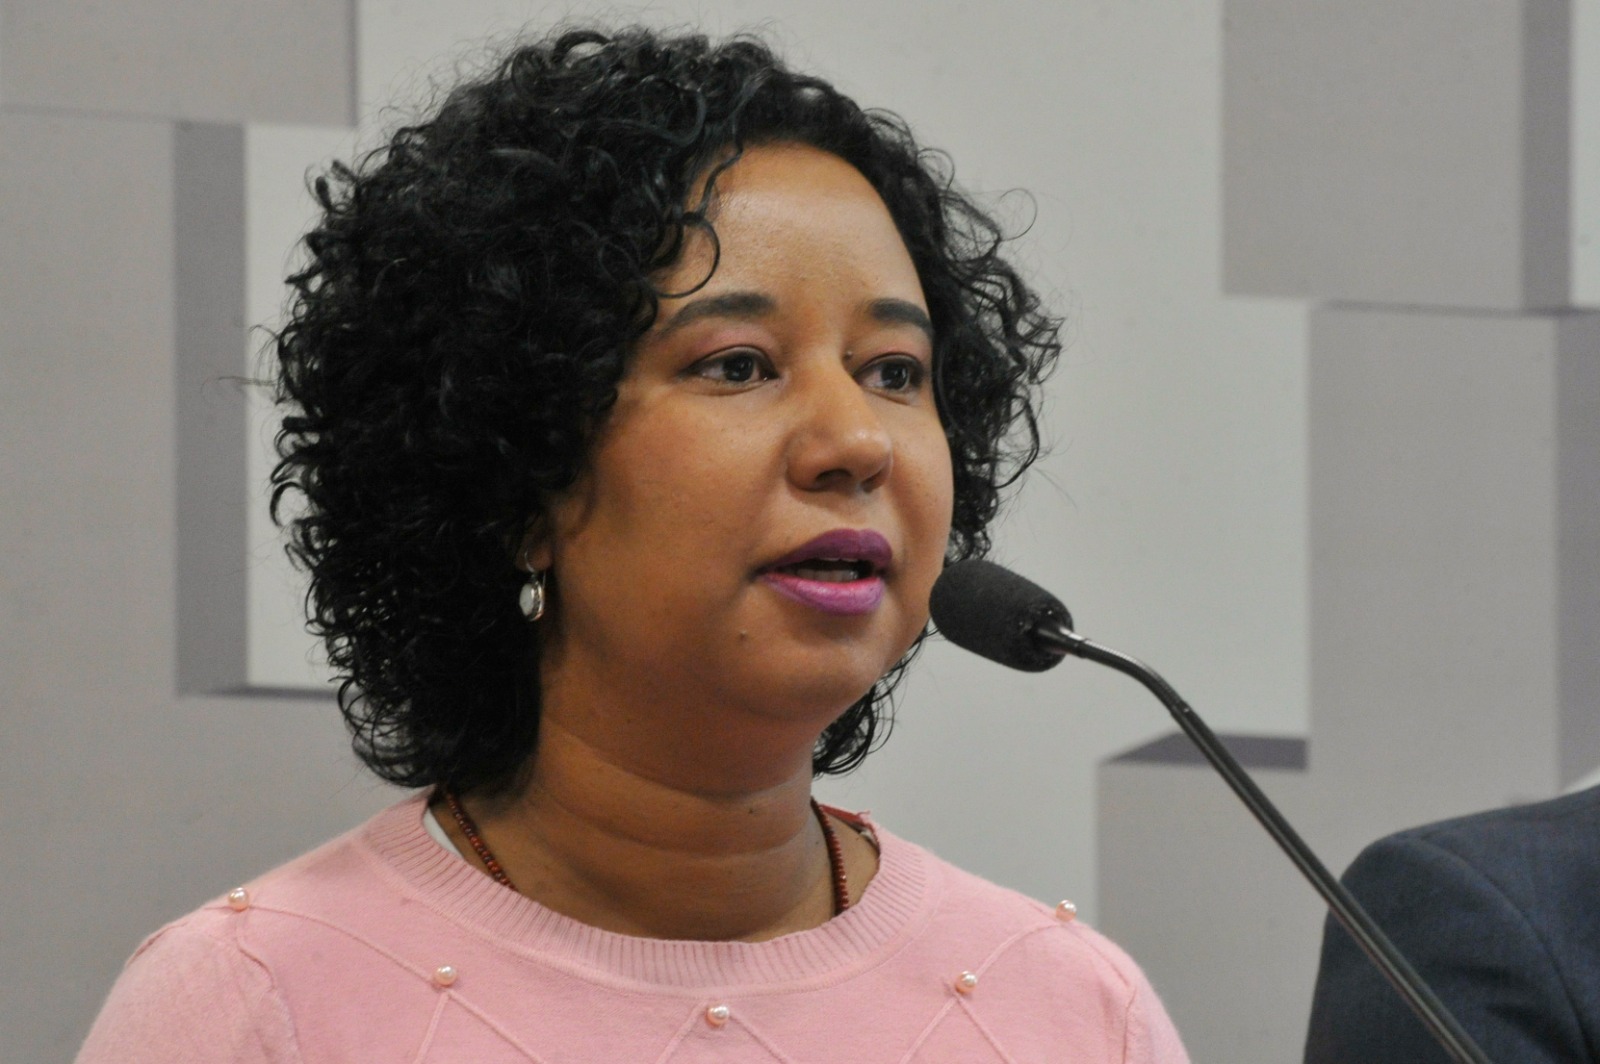 Fotografia colorida de Ana Flávia Magalhães Pinto. Ela é uma mulher negra, tem cabelos escuros e cacheados, e usa uma blusa cor de rosa. Na foto, ela está falando diante de um microfone.